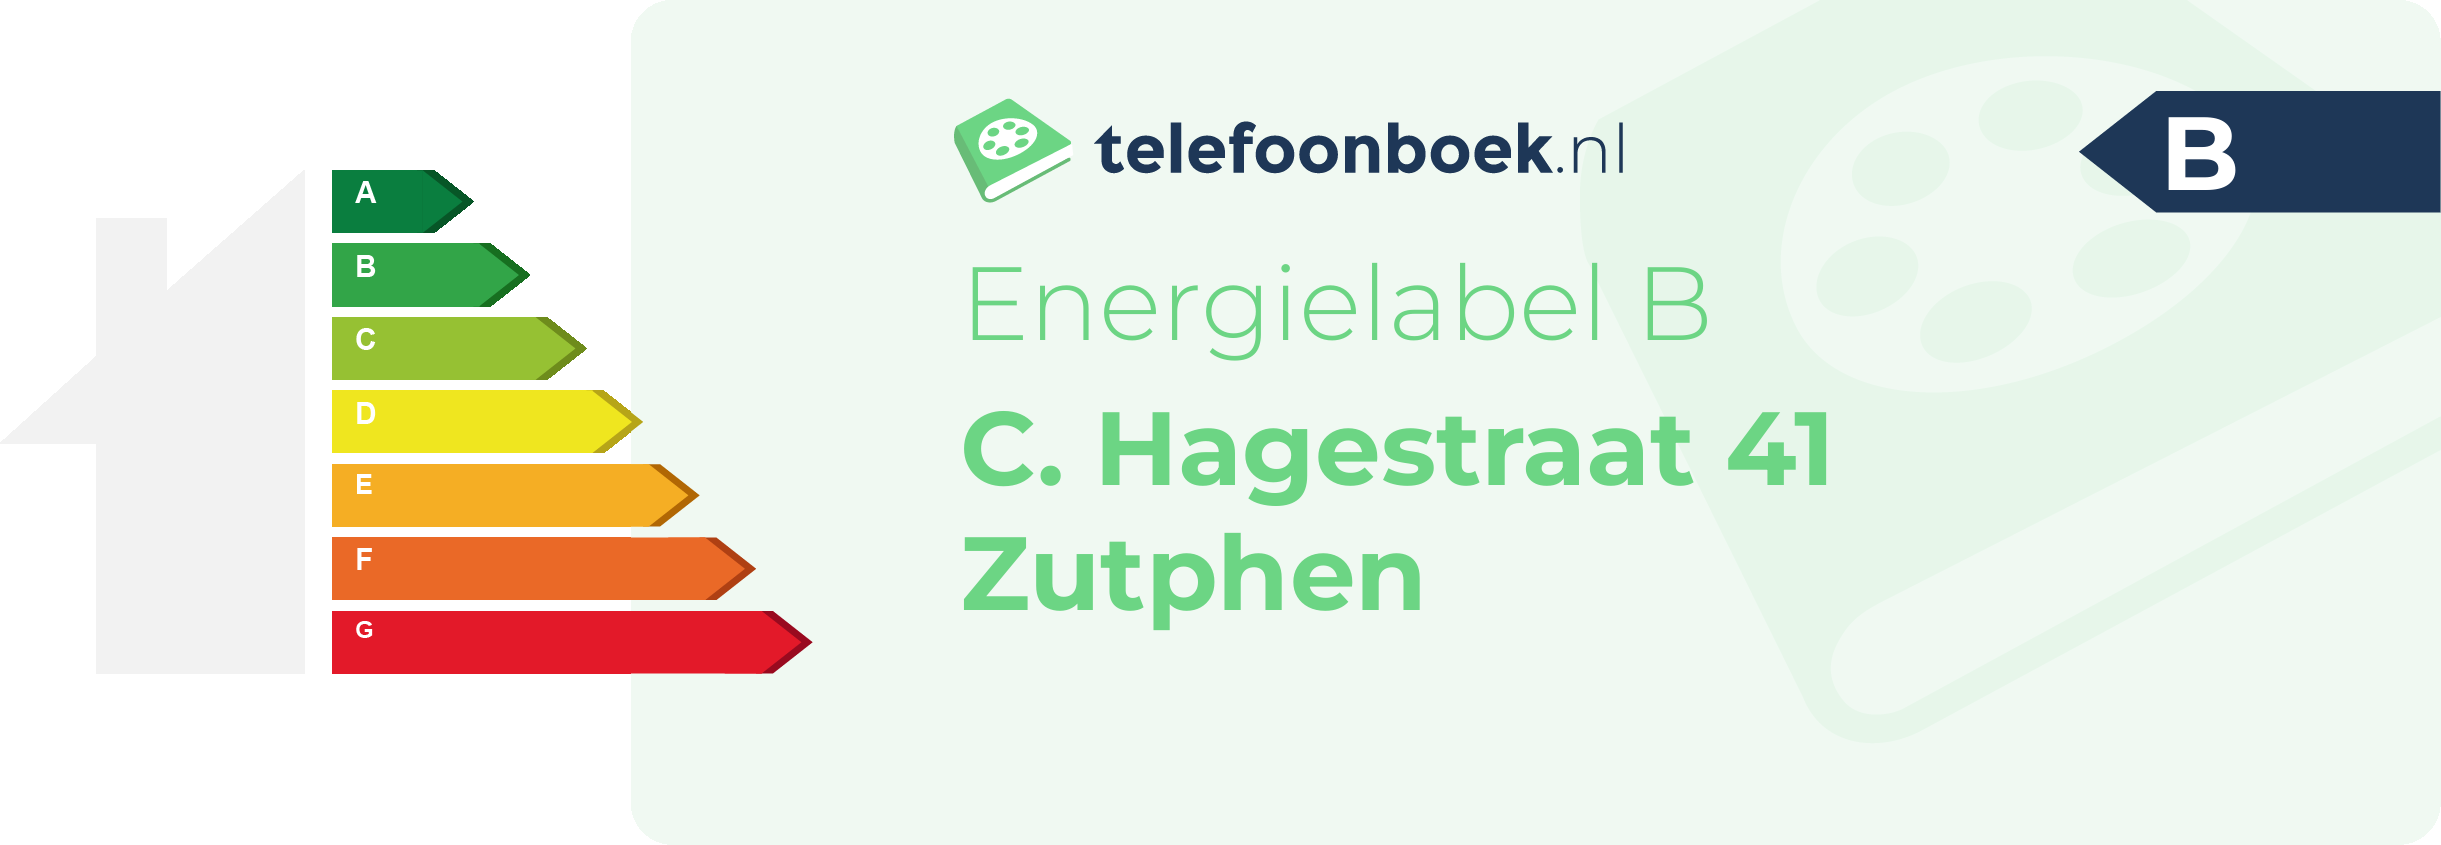 Energielabel C. Hagestraat 41 Zutphen